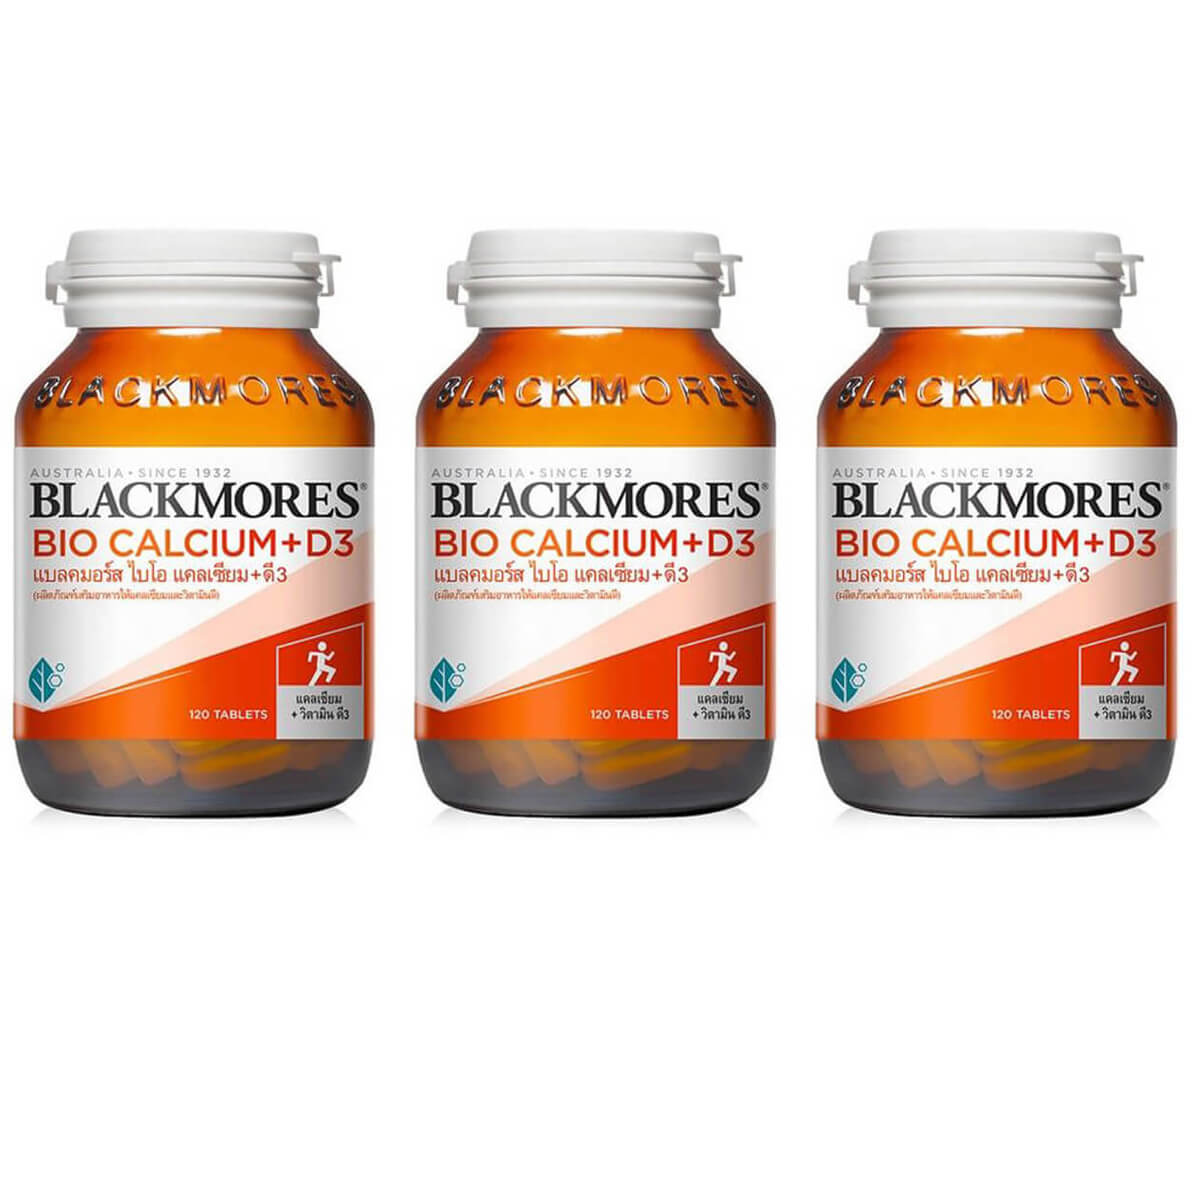 Пищевая добавка Blackmores Bio Calcium + D3, 3 банки по 120 таблеток кальций d3 blackmores 60 таблеток